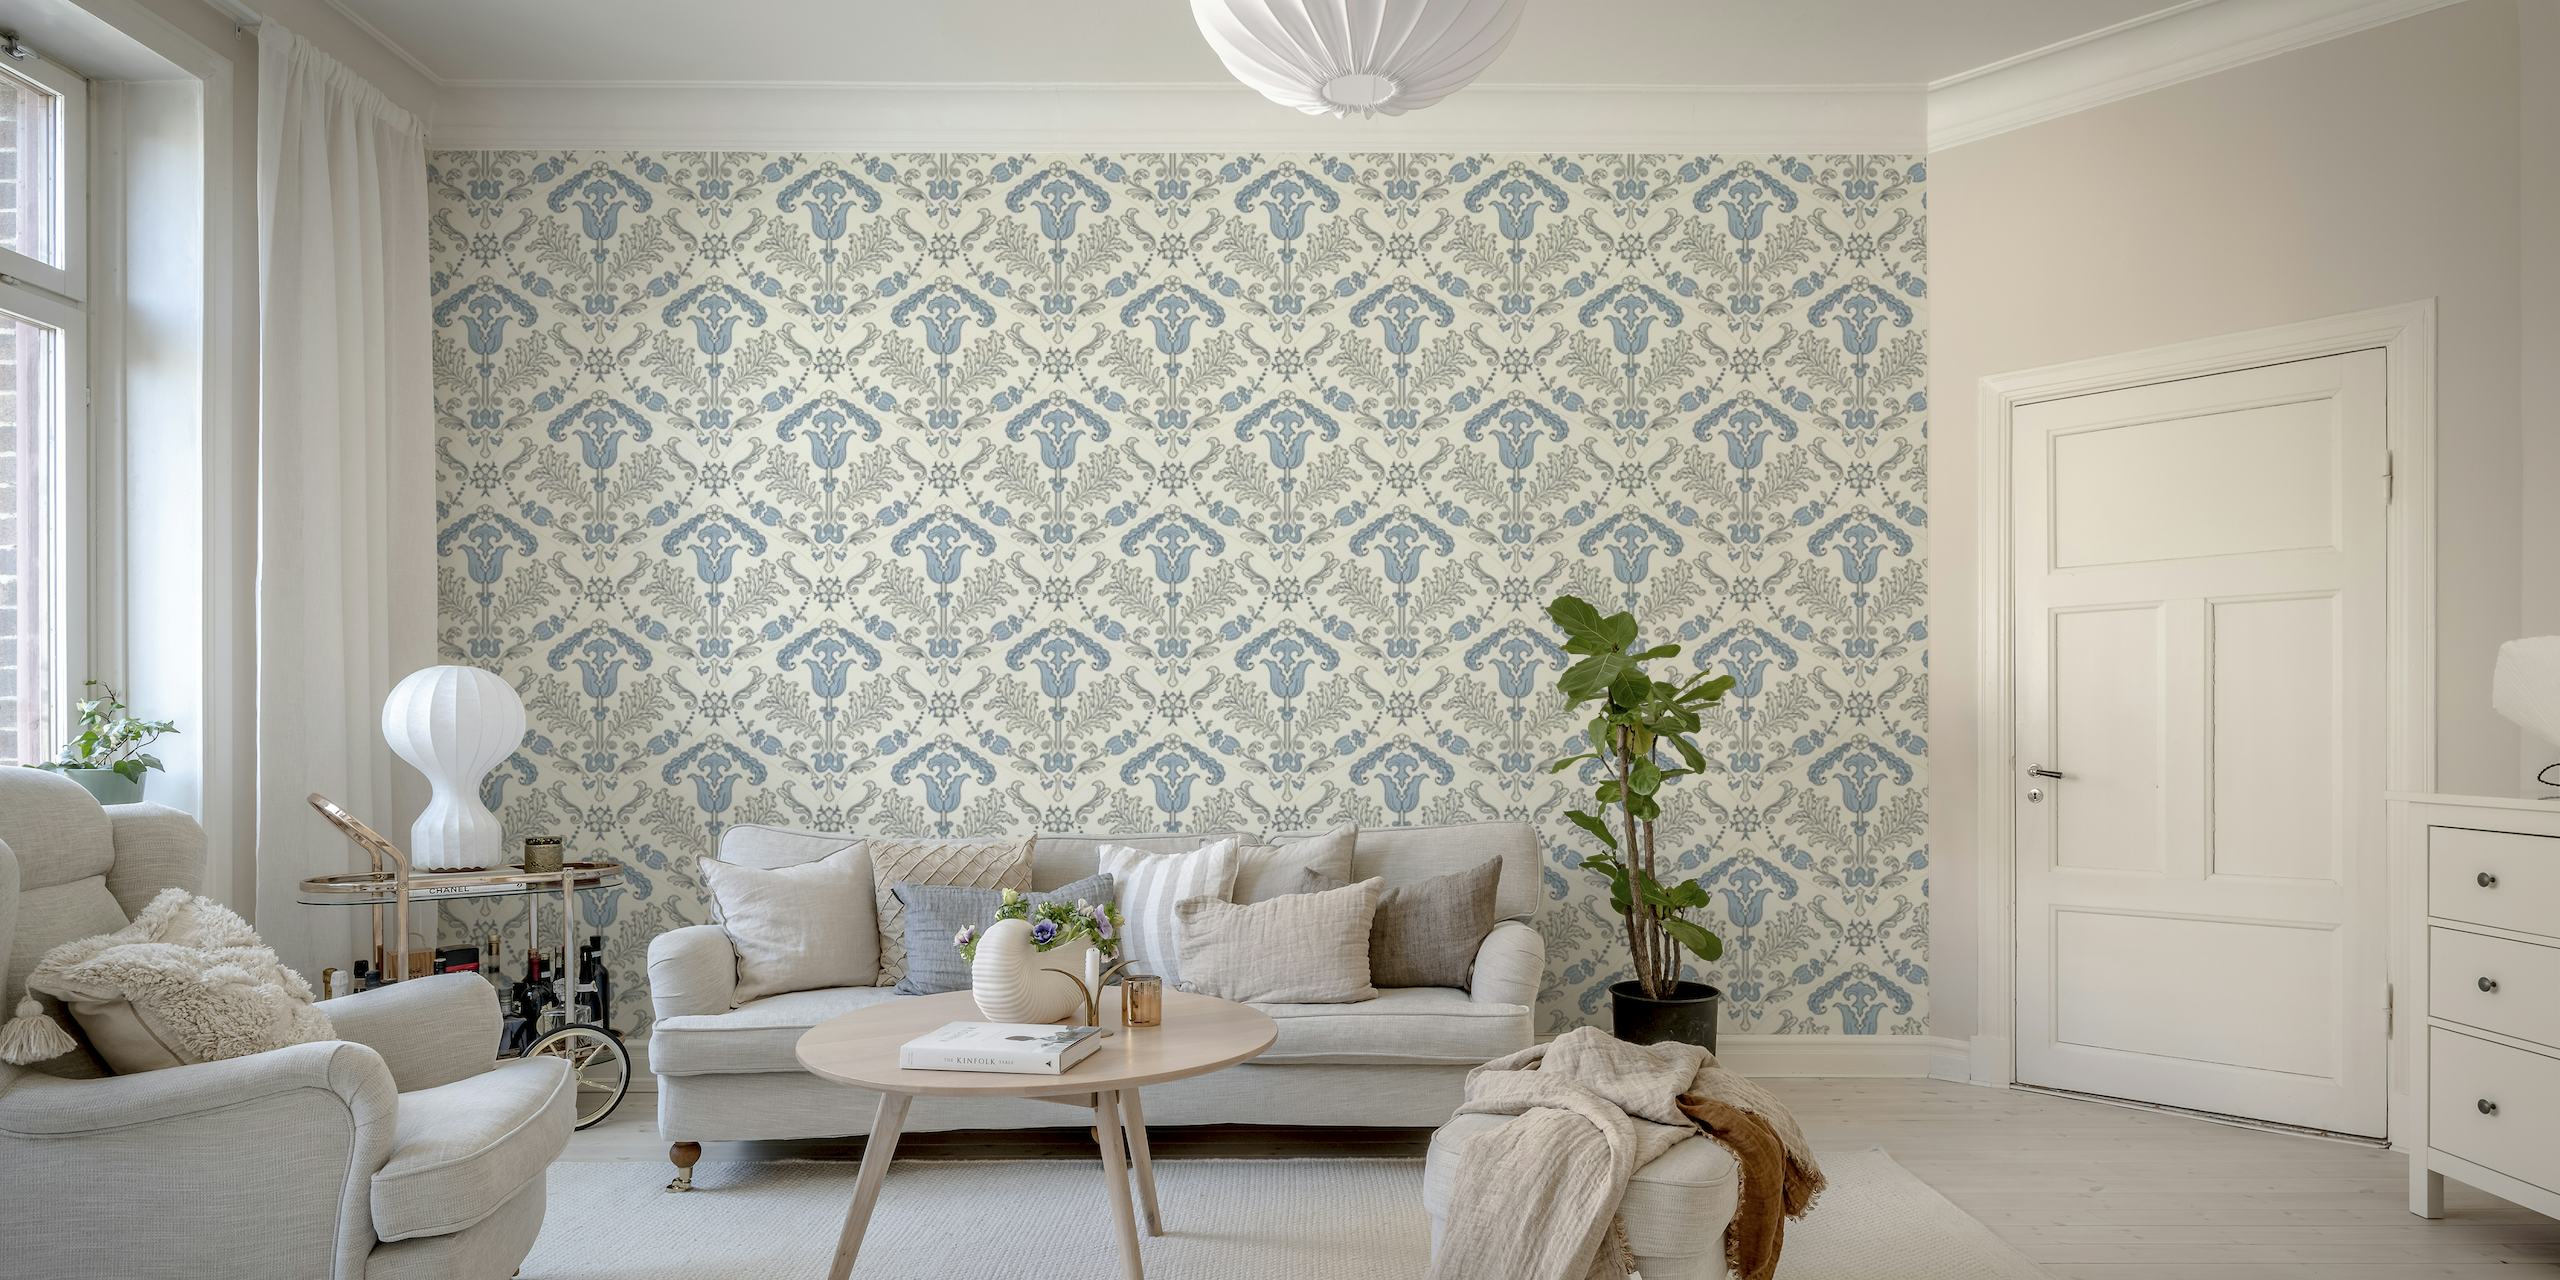 Papier peint mural à sticker de tulipes stylisées bleu clair pour la décoration intérieure.